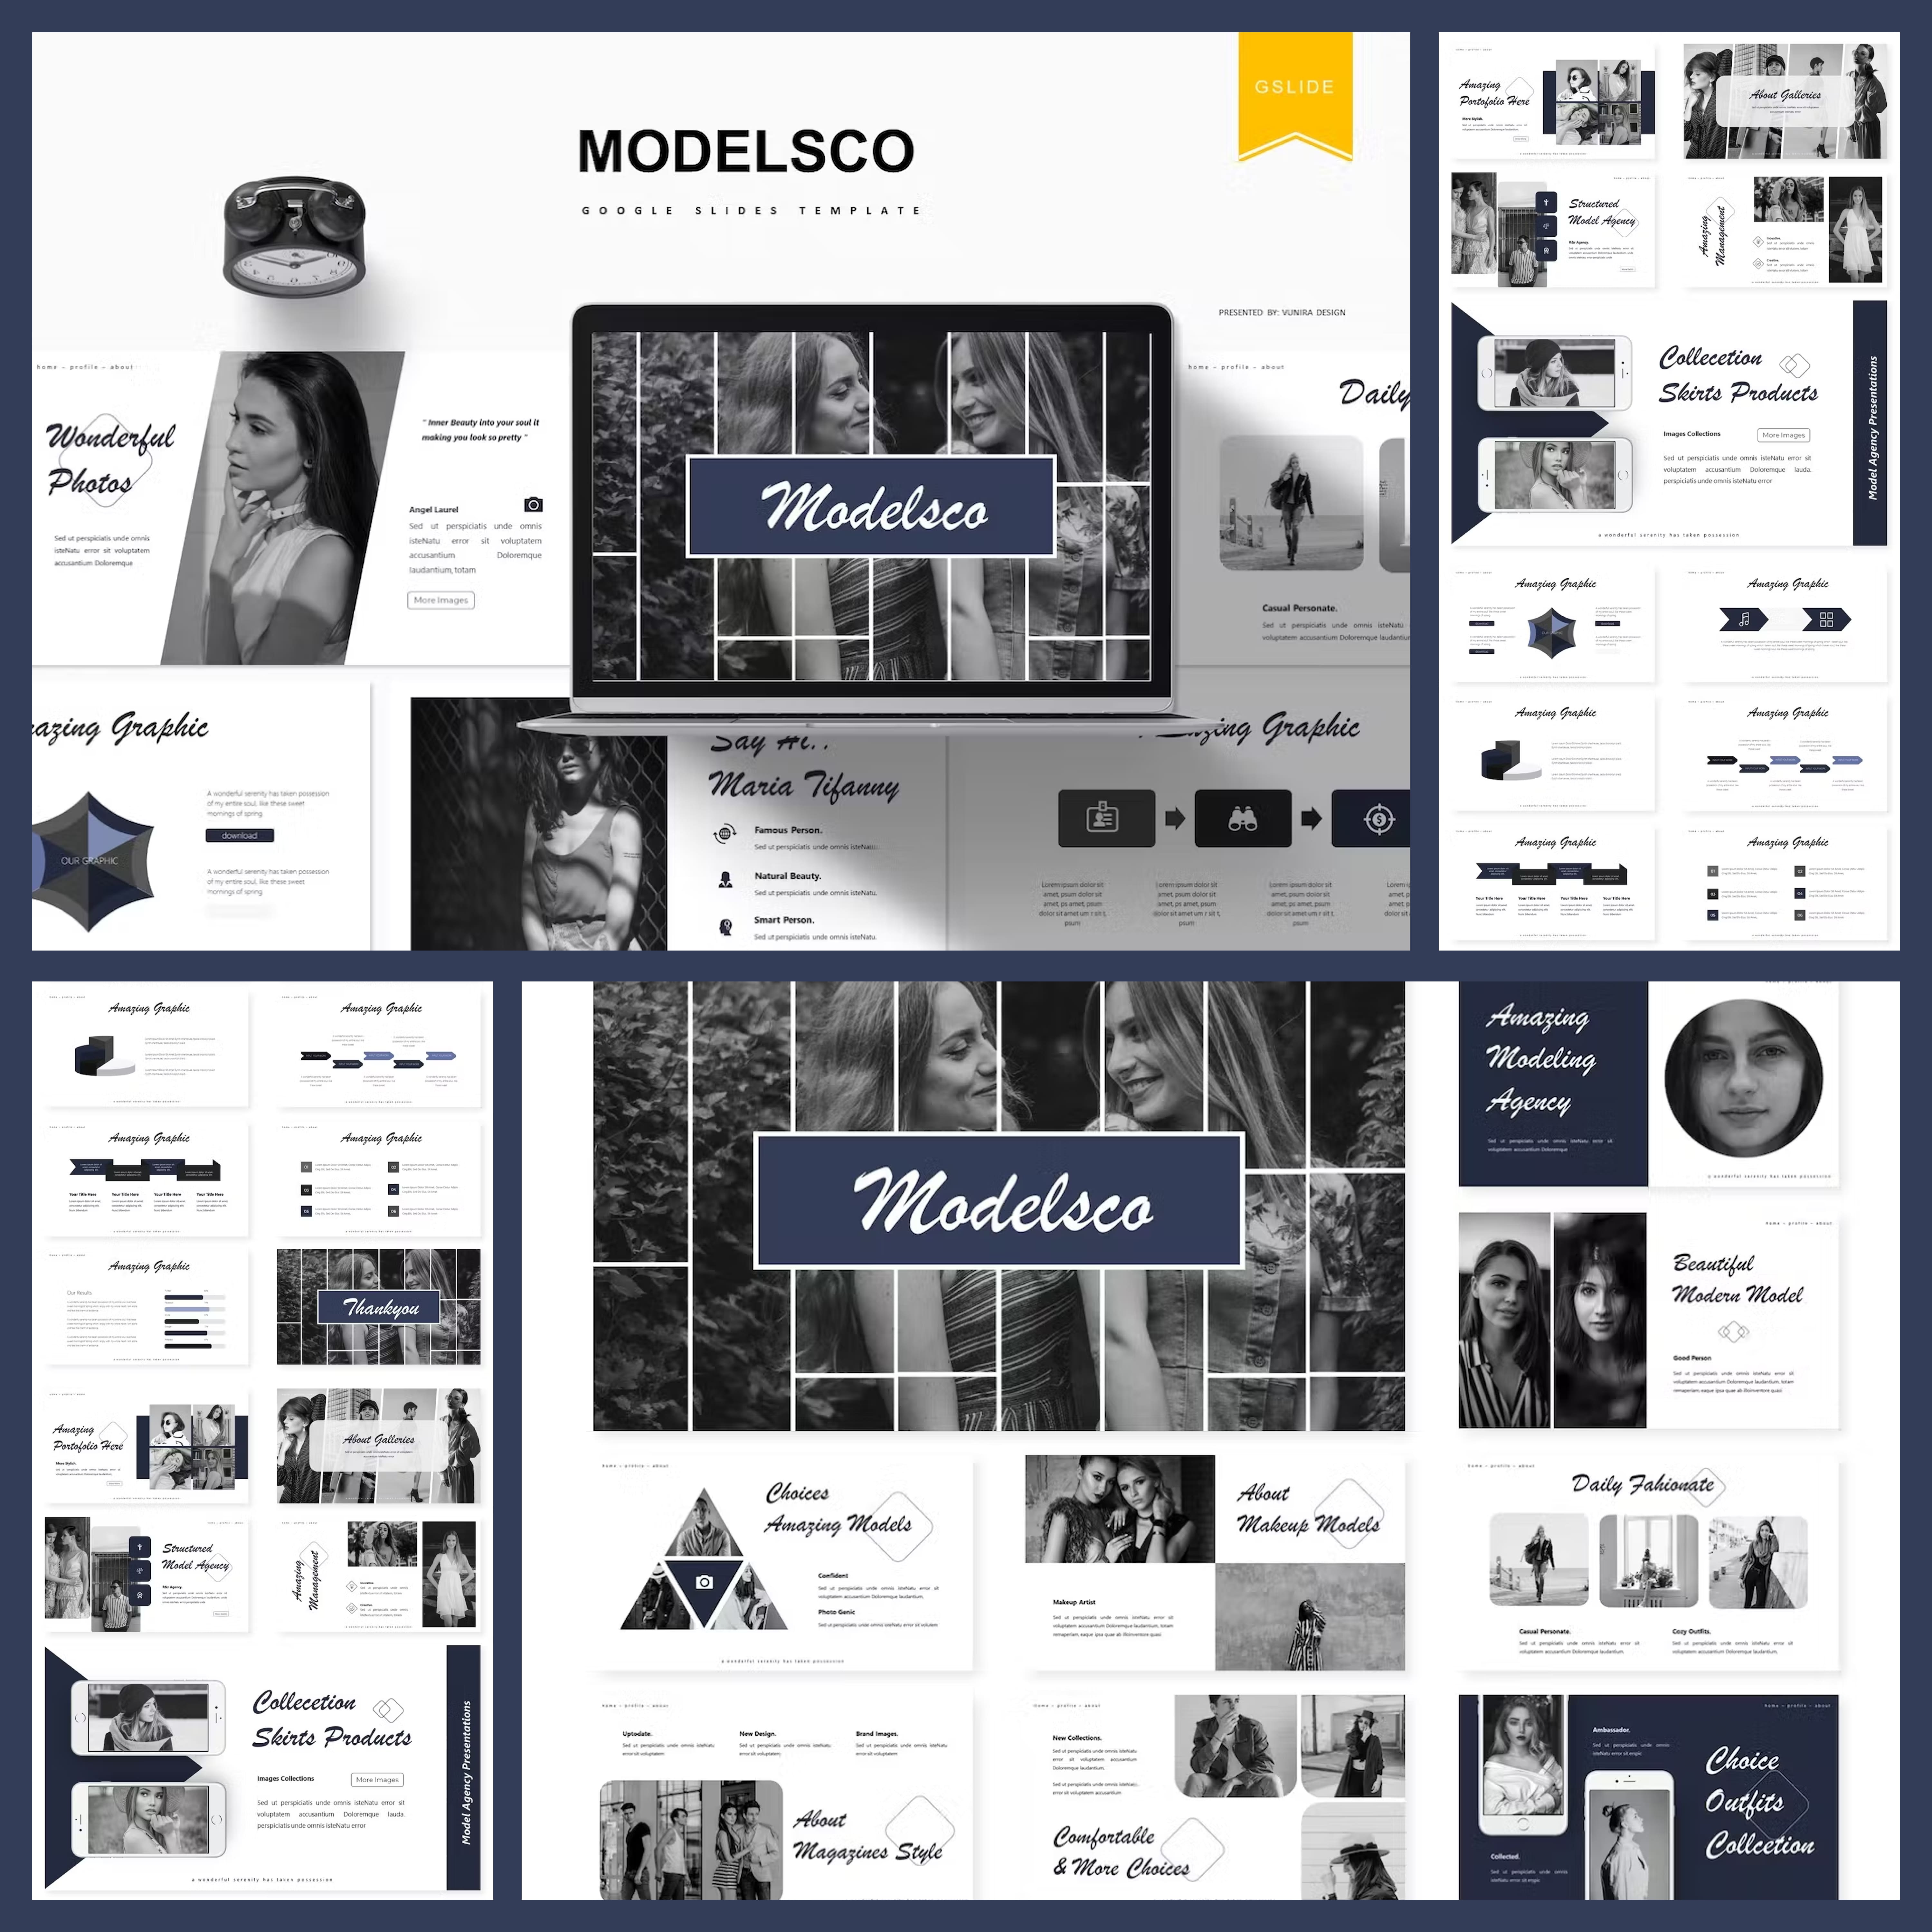 Modelsco | Google Slides Template Cover.